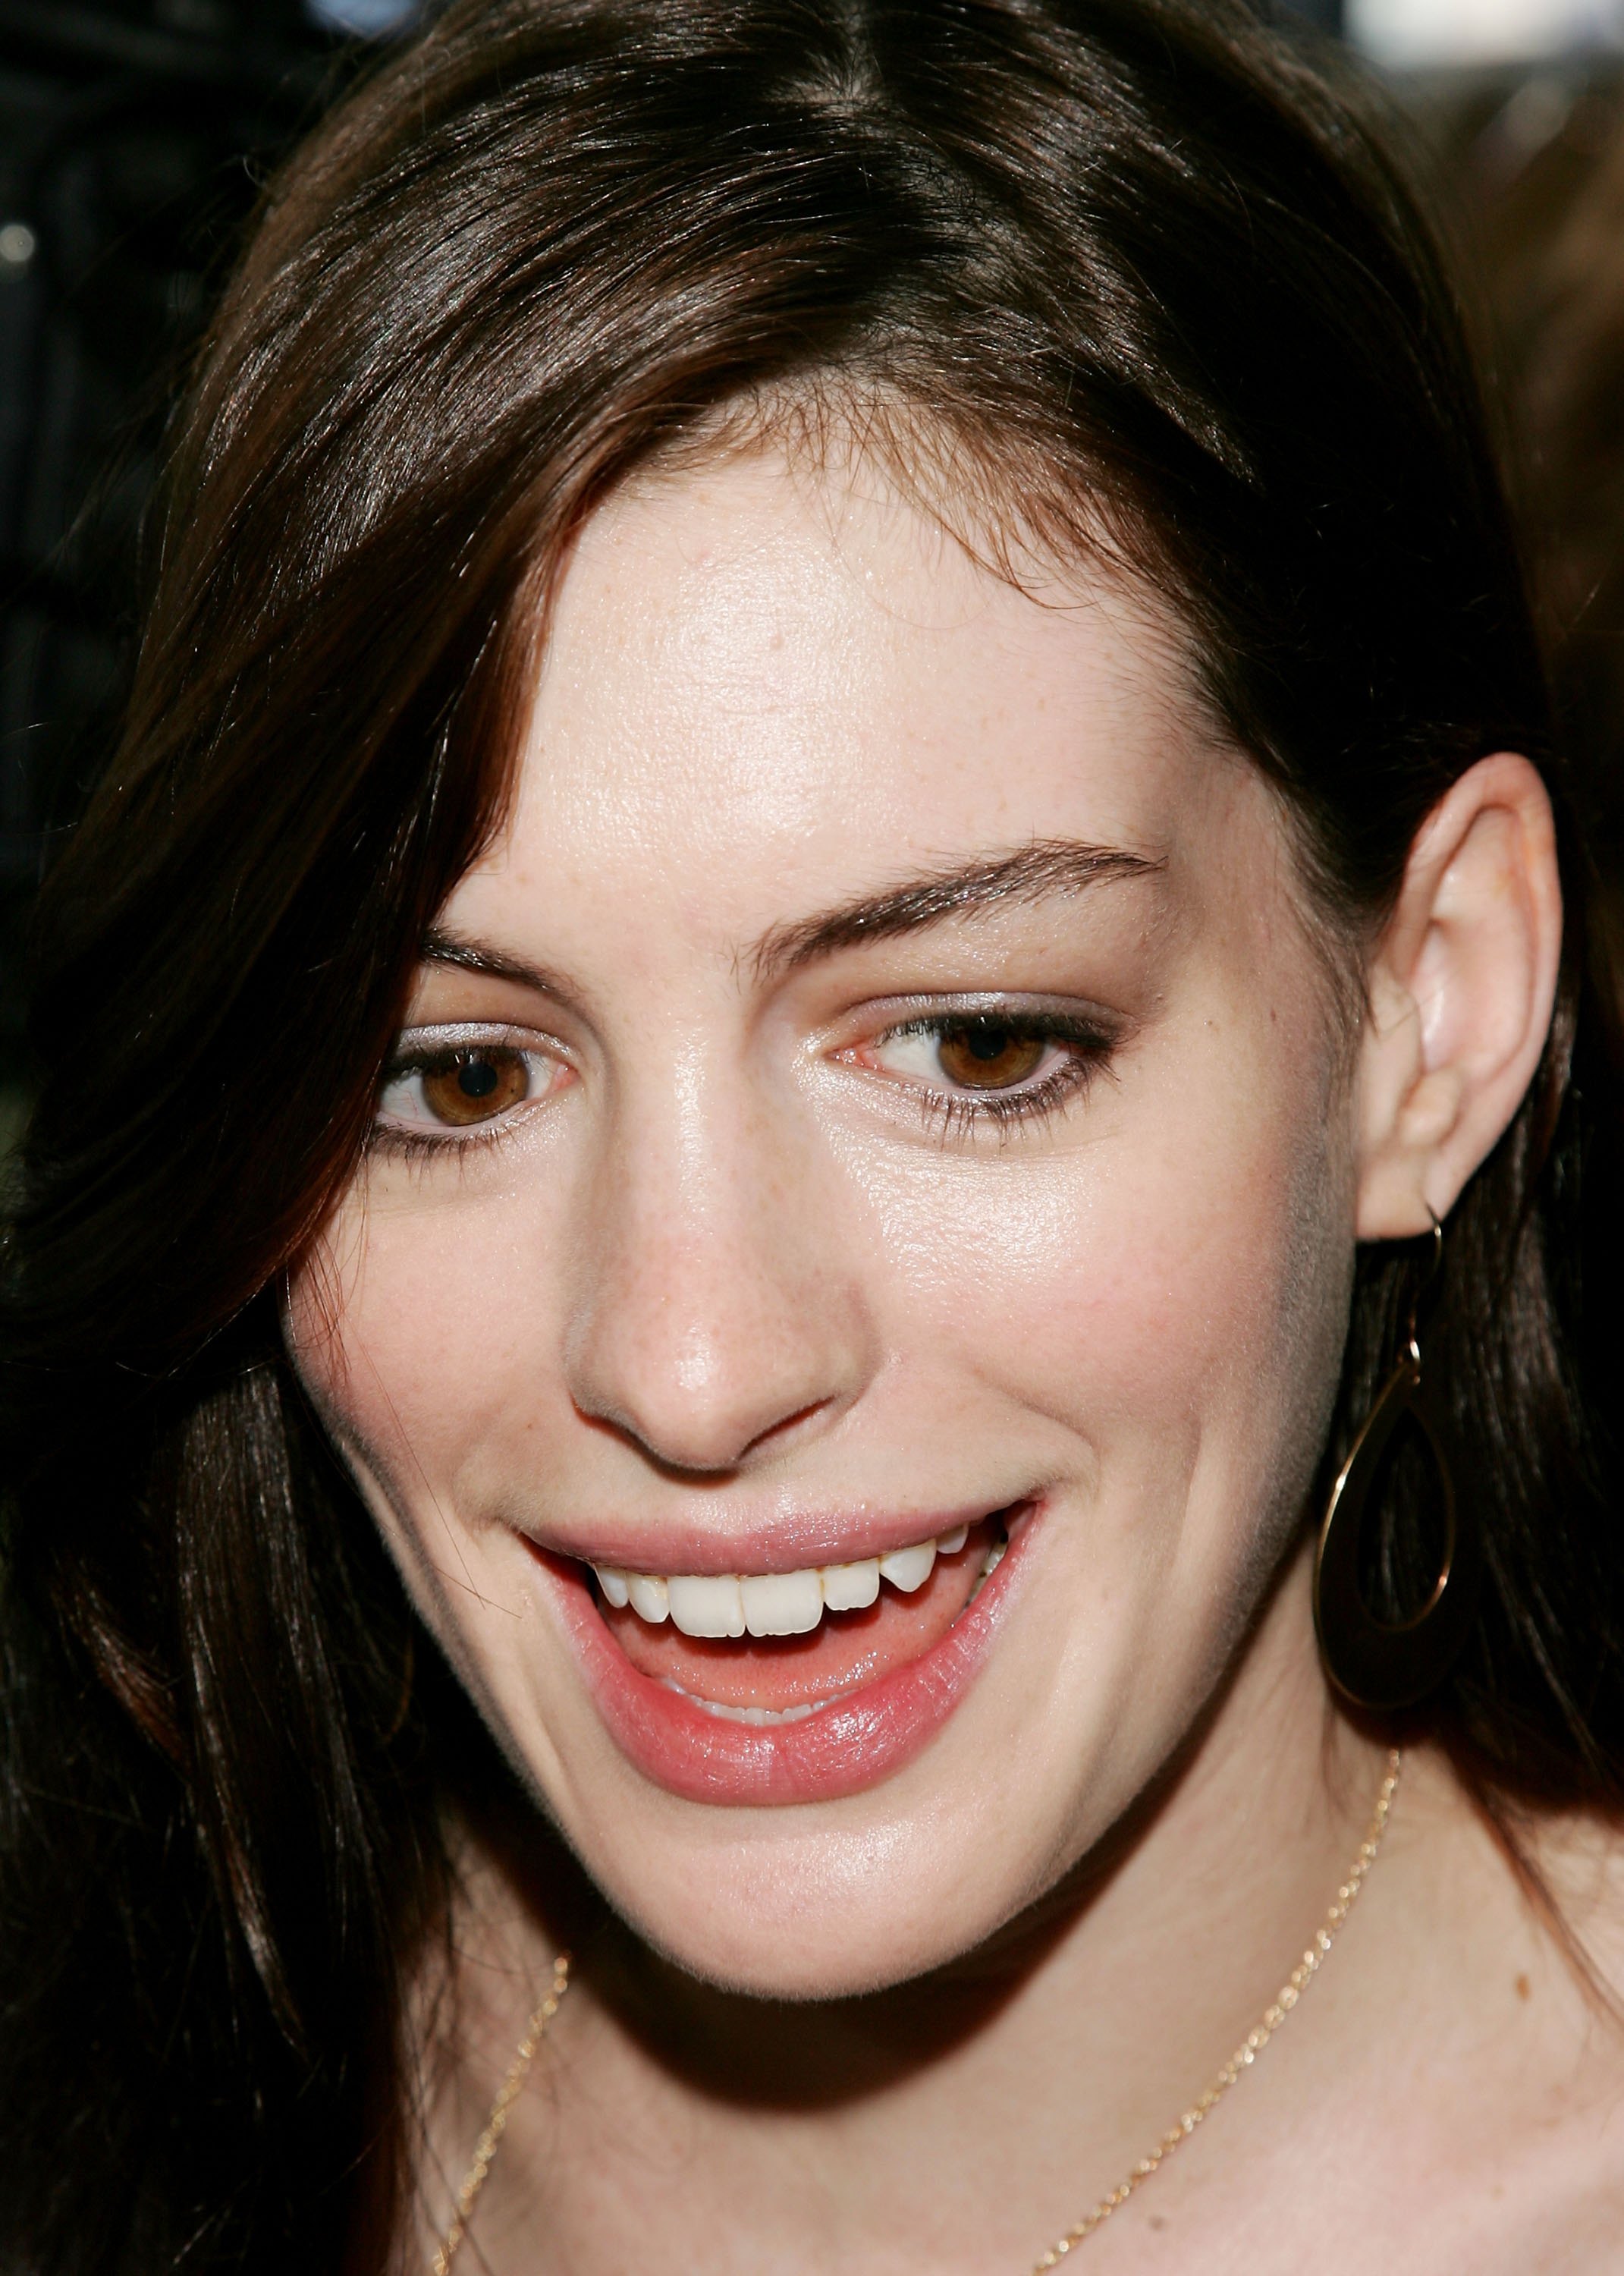 brunettes, women, Anne Hathaway, actress - desktop wallpaper